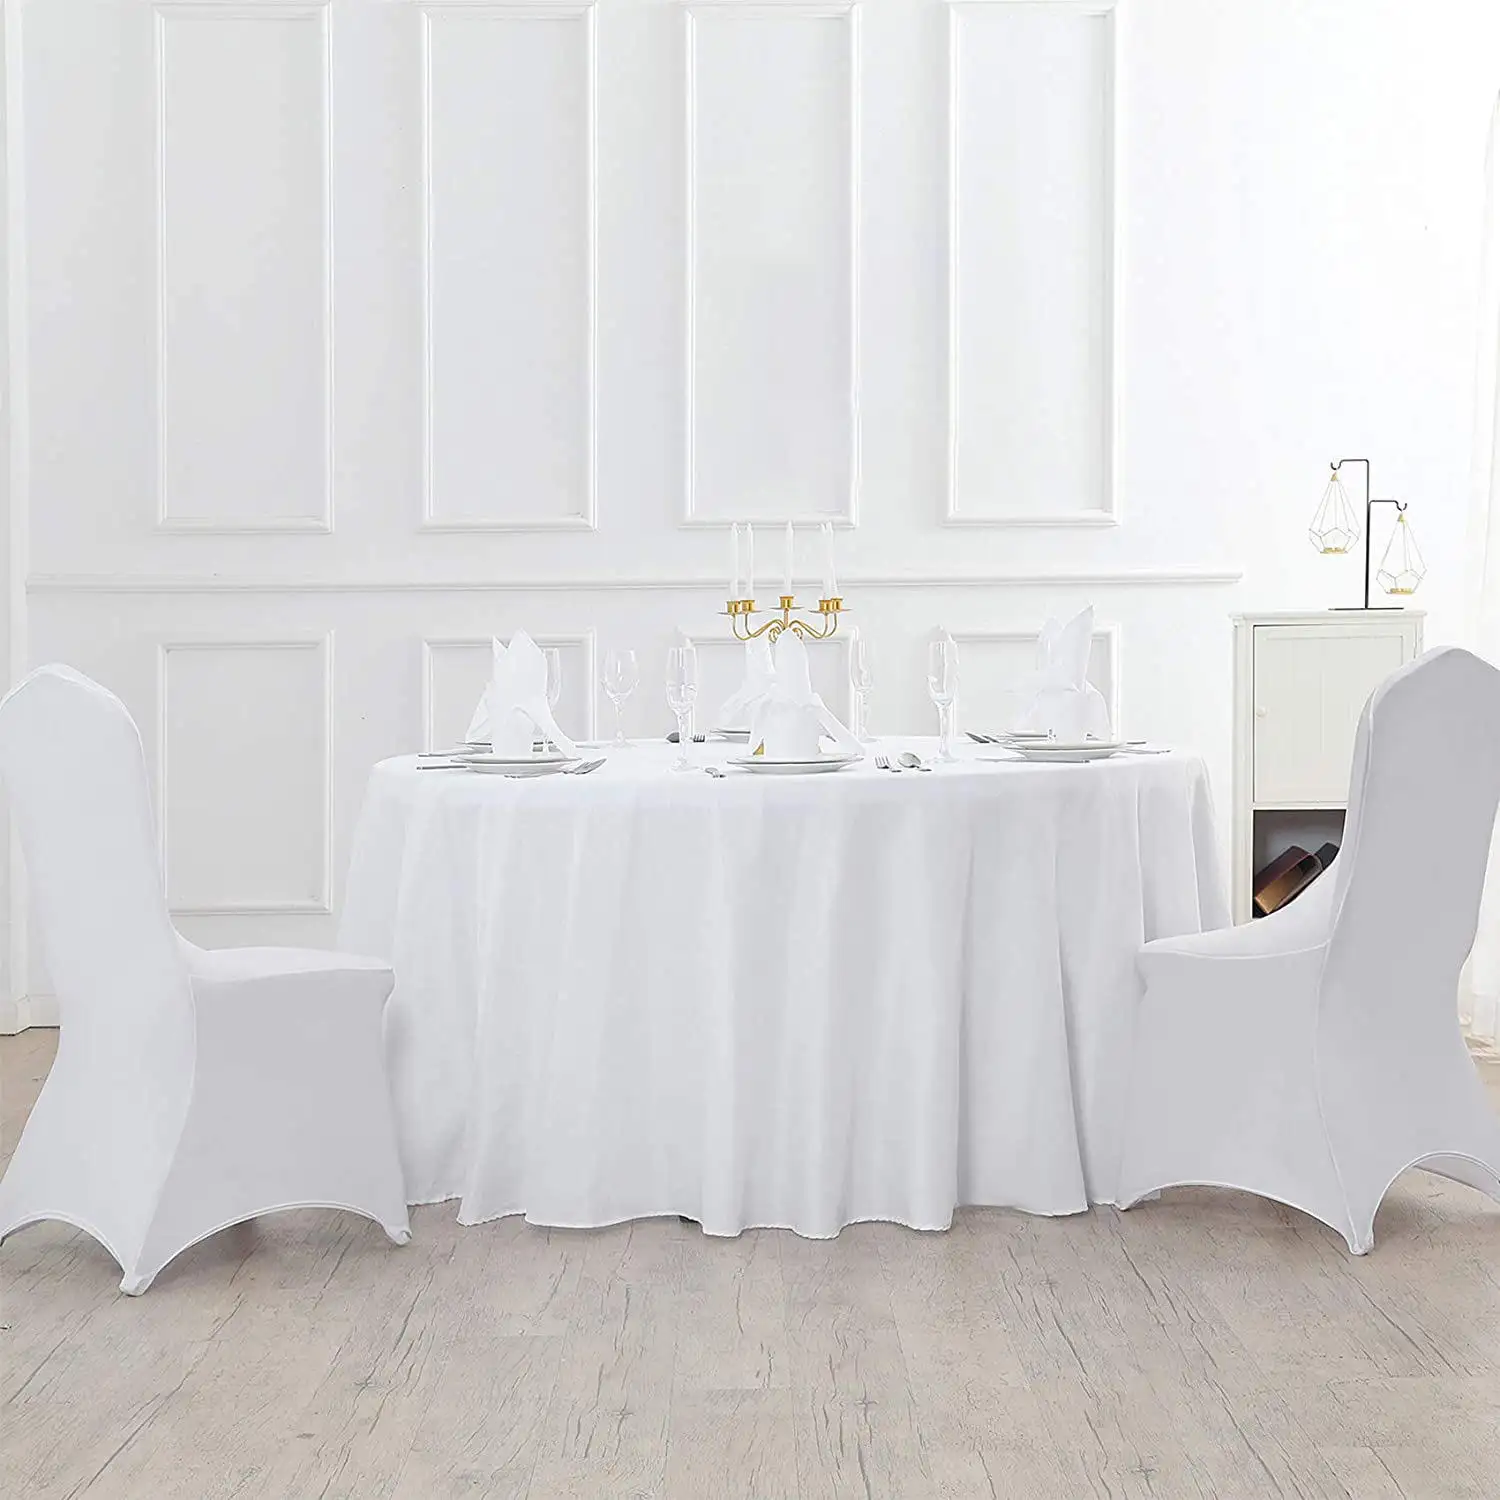 50 pz fodera per sedia in poliestere elastico per feste bianco banchetto elasticizzato spandex coprisedie per eventi matrimoni